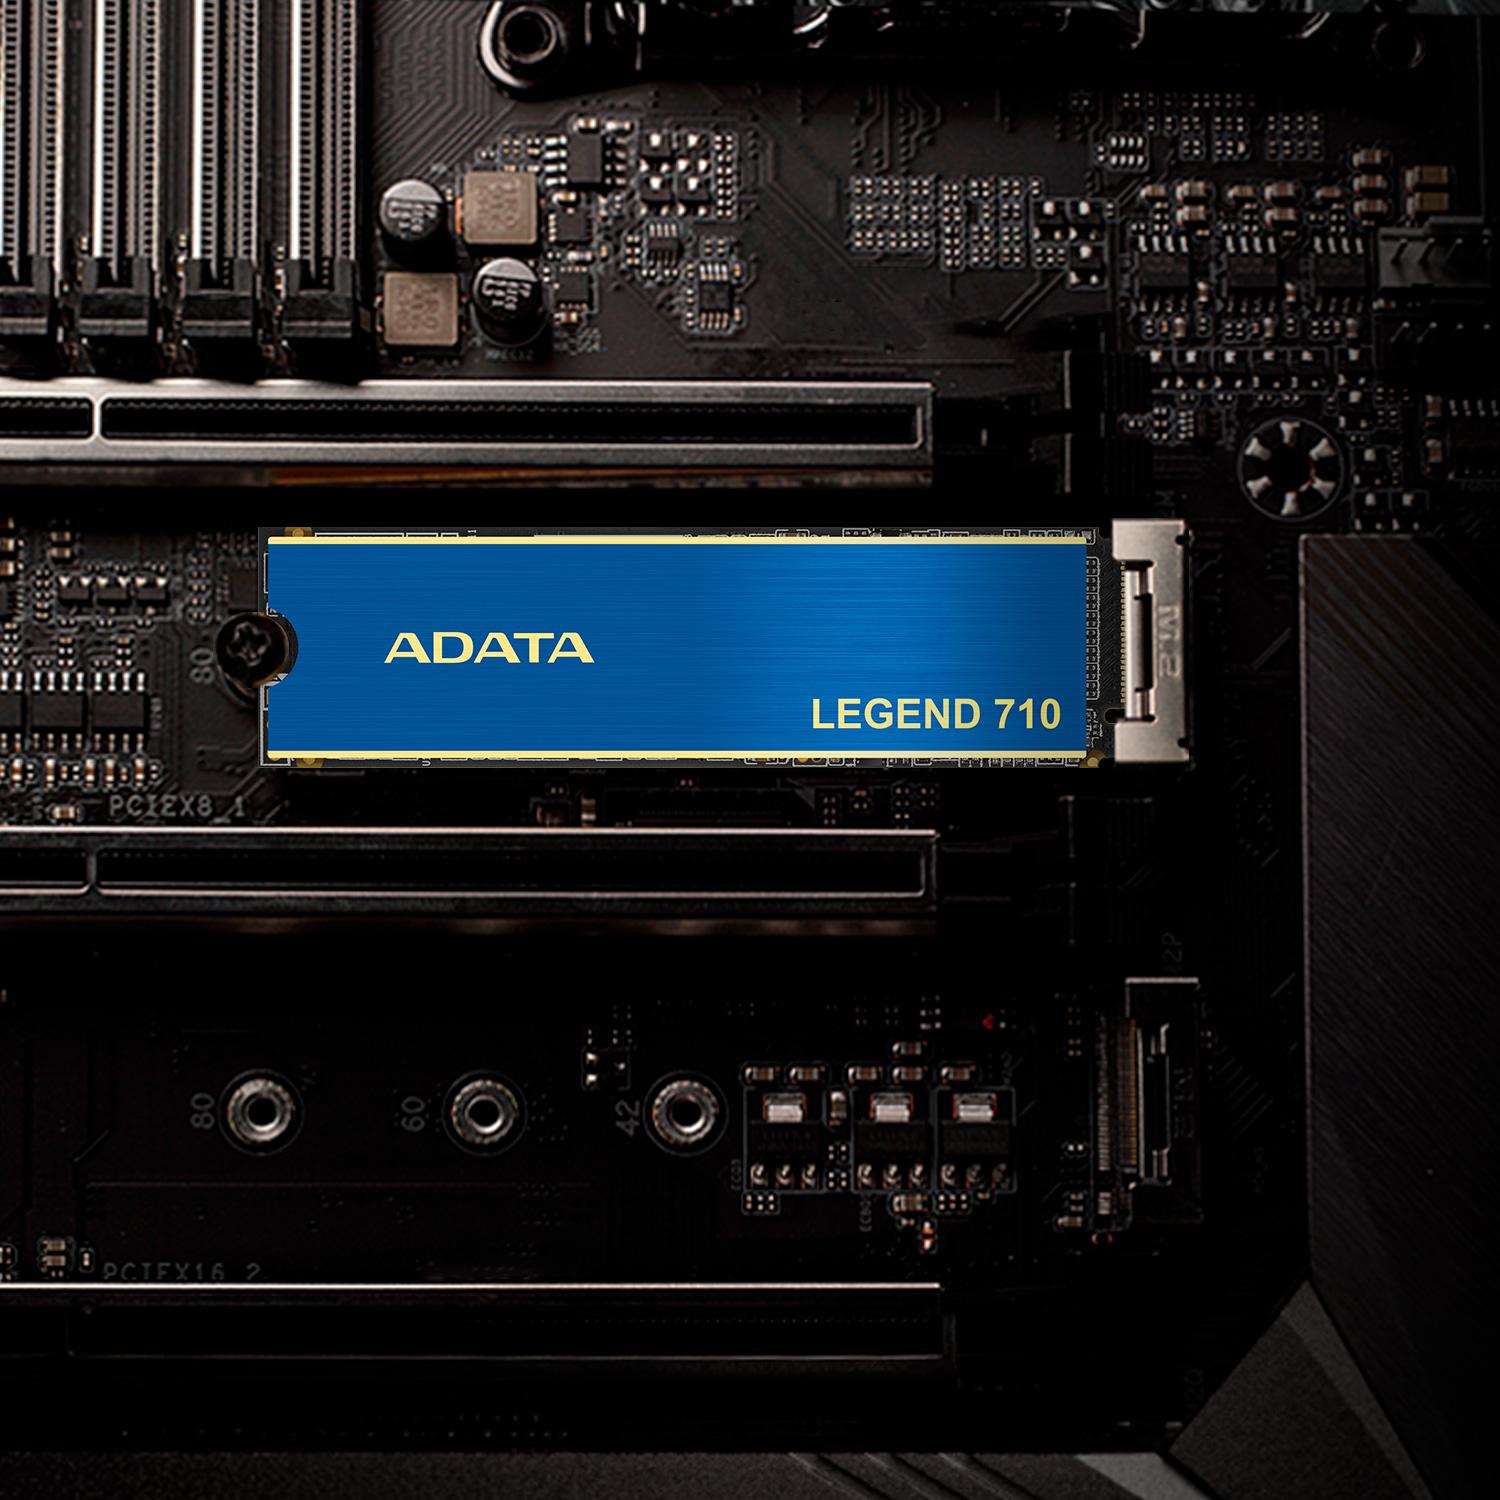 Adata LEGEND 710 PCIe Gen3 x4 M.2 2280 固態硬碟